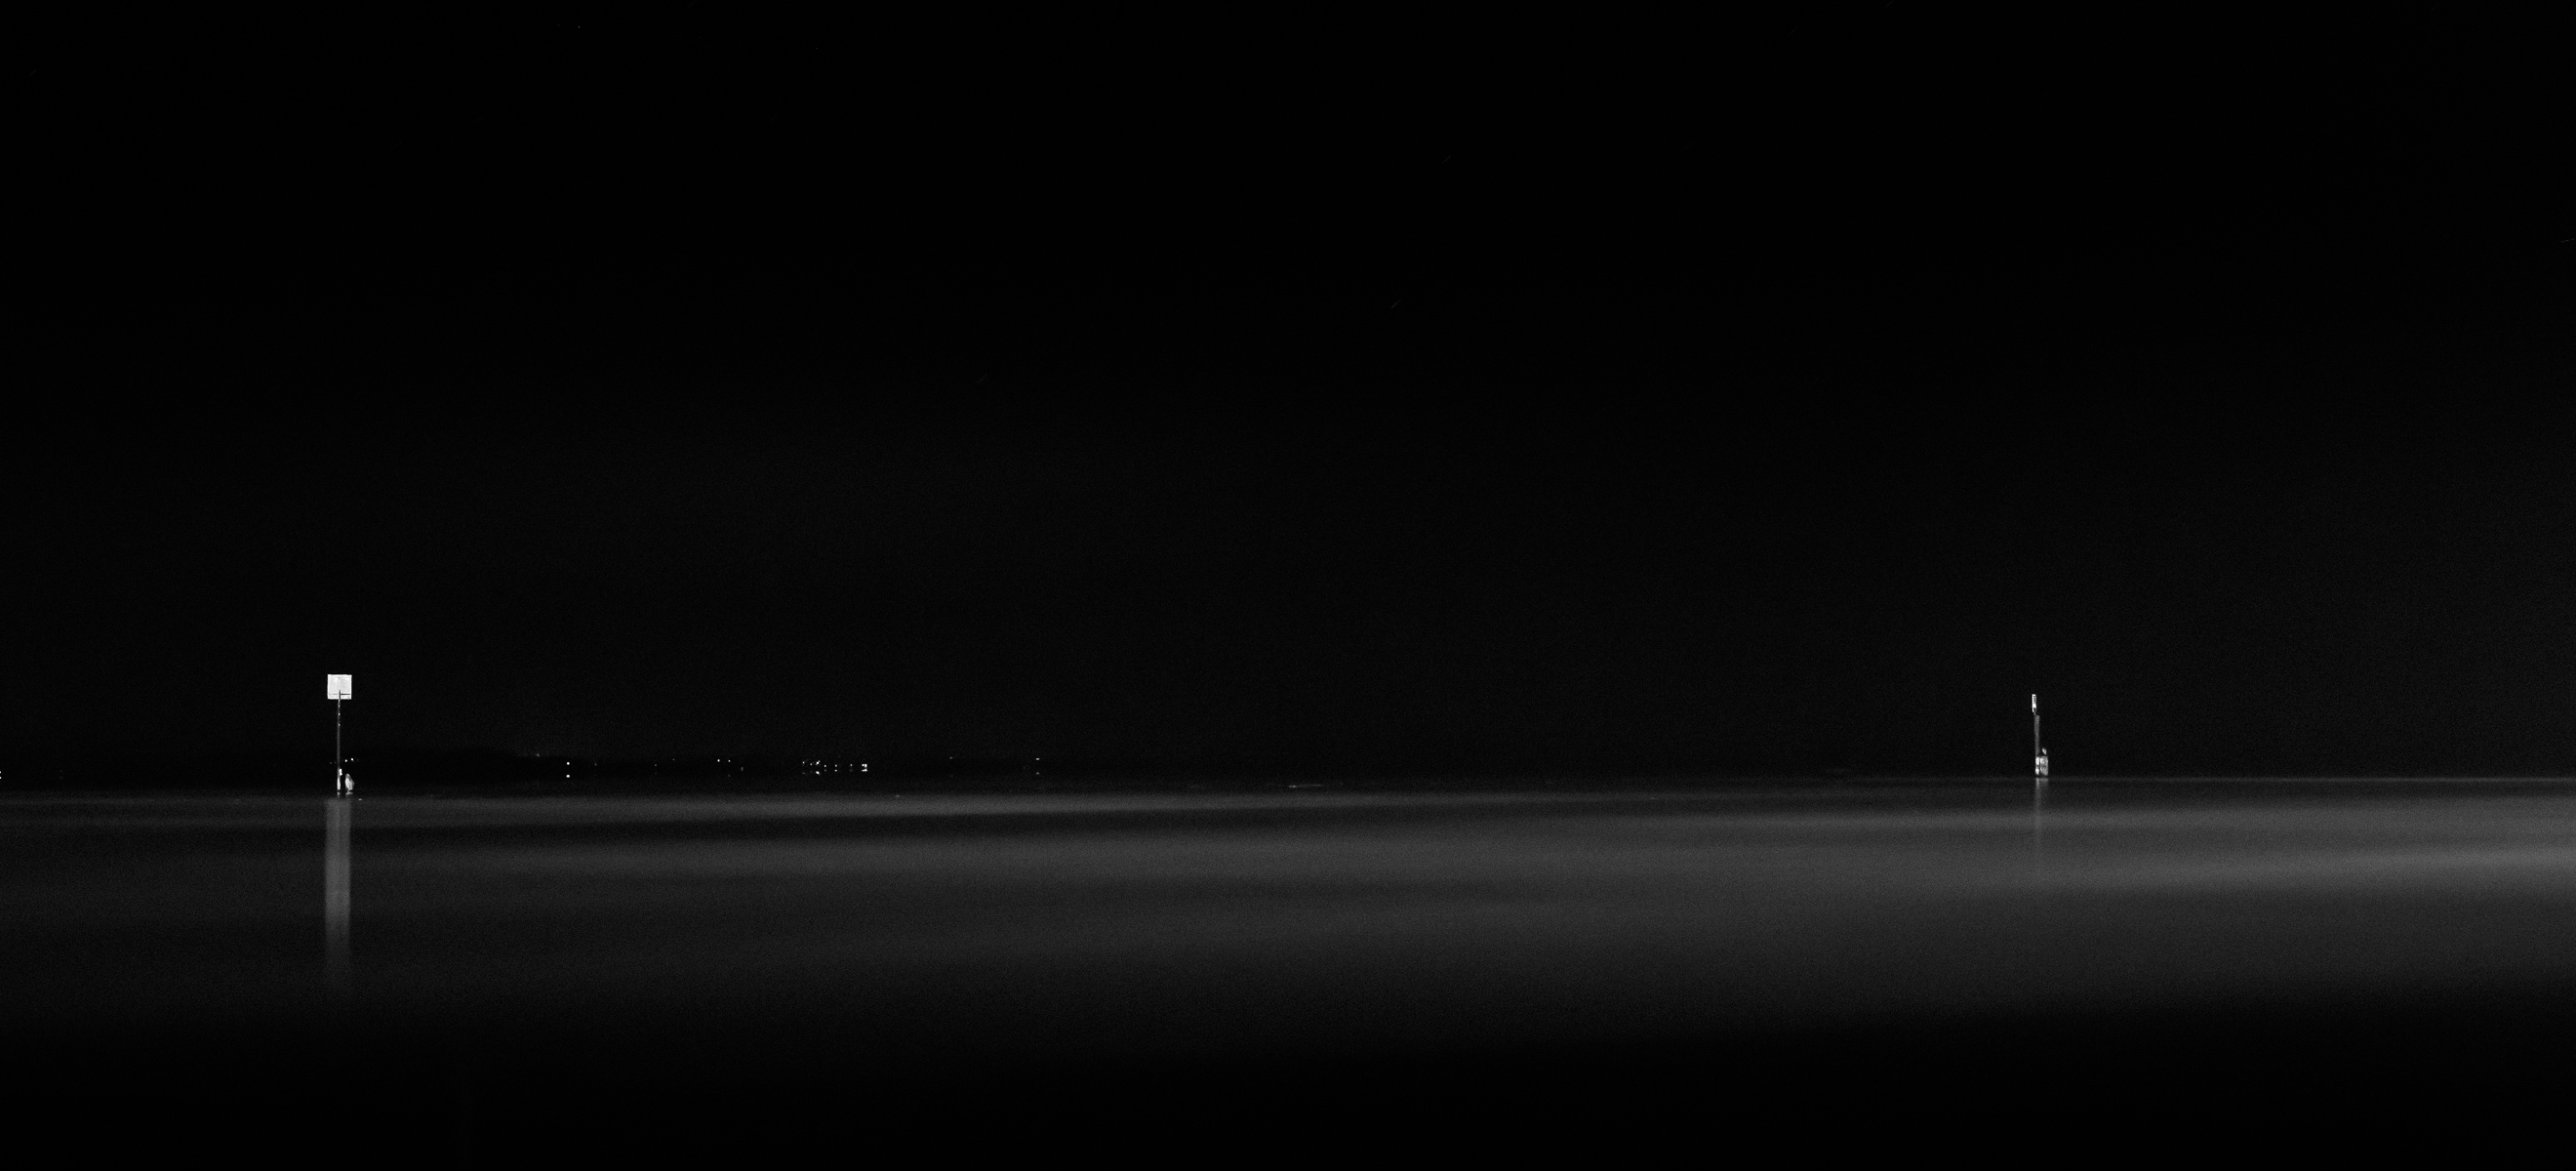 Bodensee bei Nacht